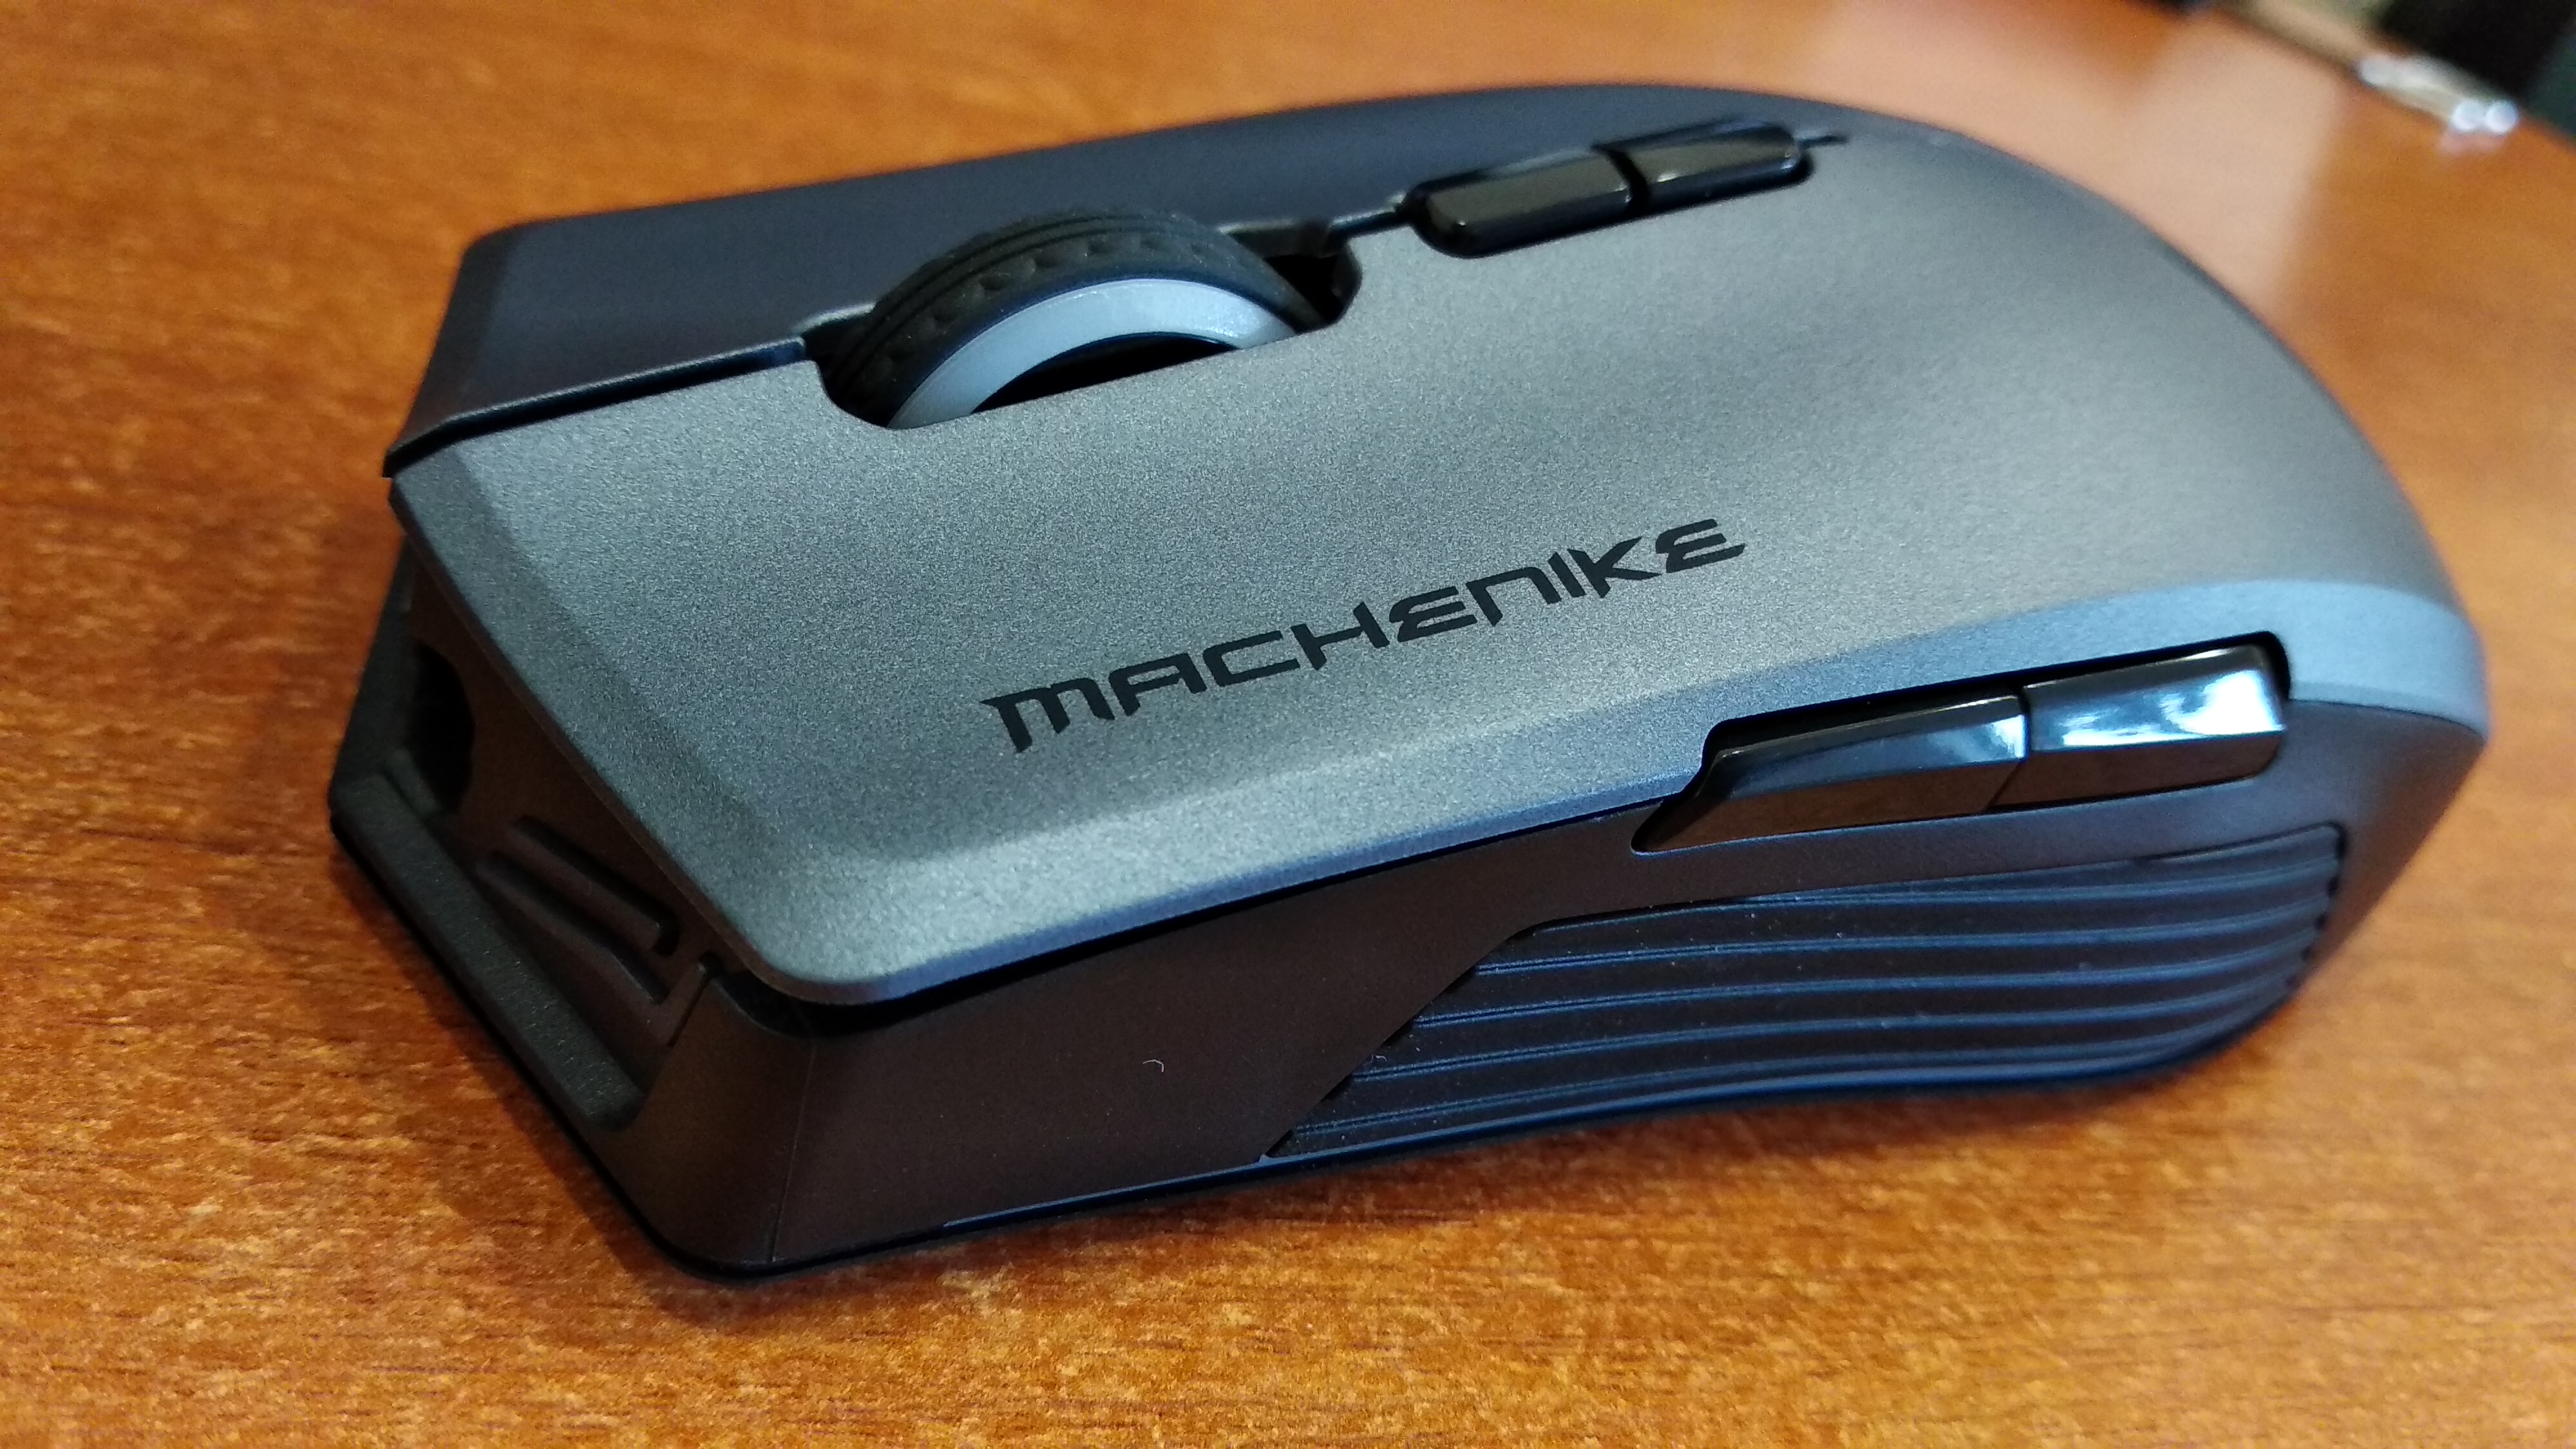 Machenike l15 pro pulsar xt. Machenike m620 Mouse. Machenike k500. Machenike m620 упаковка. V0610m.